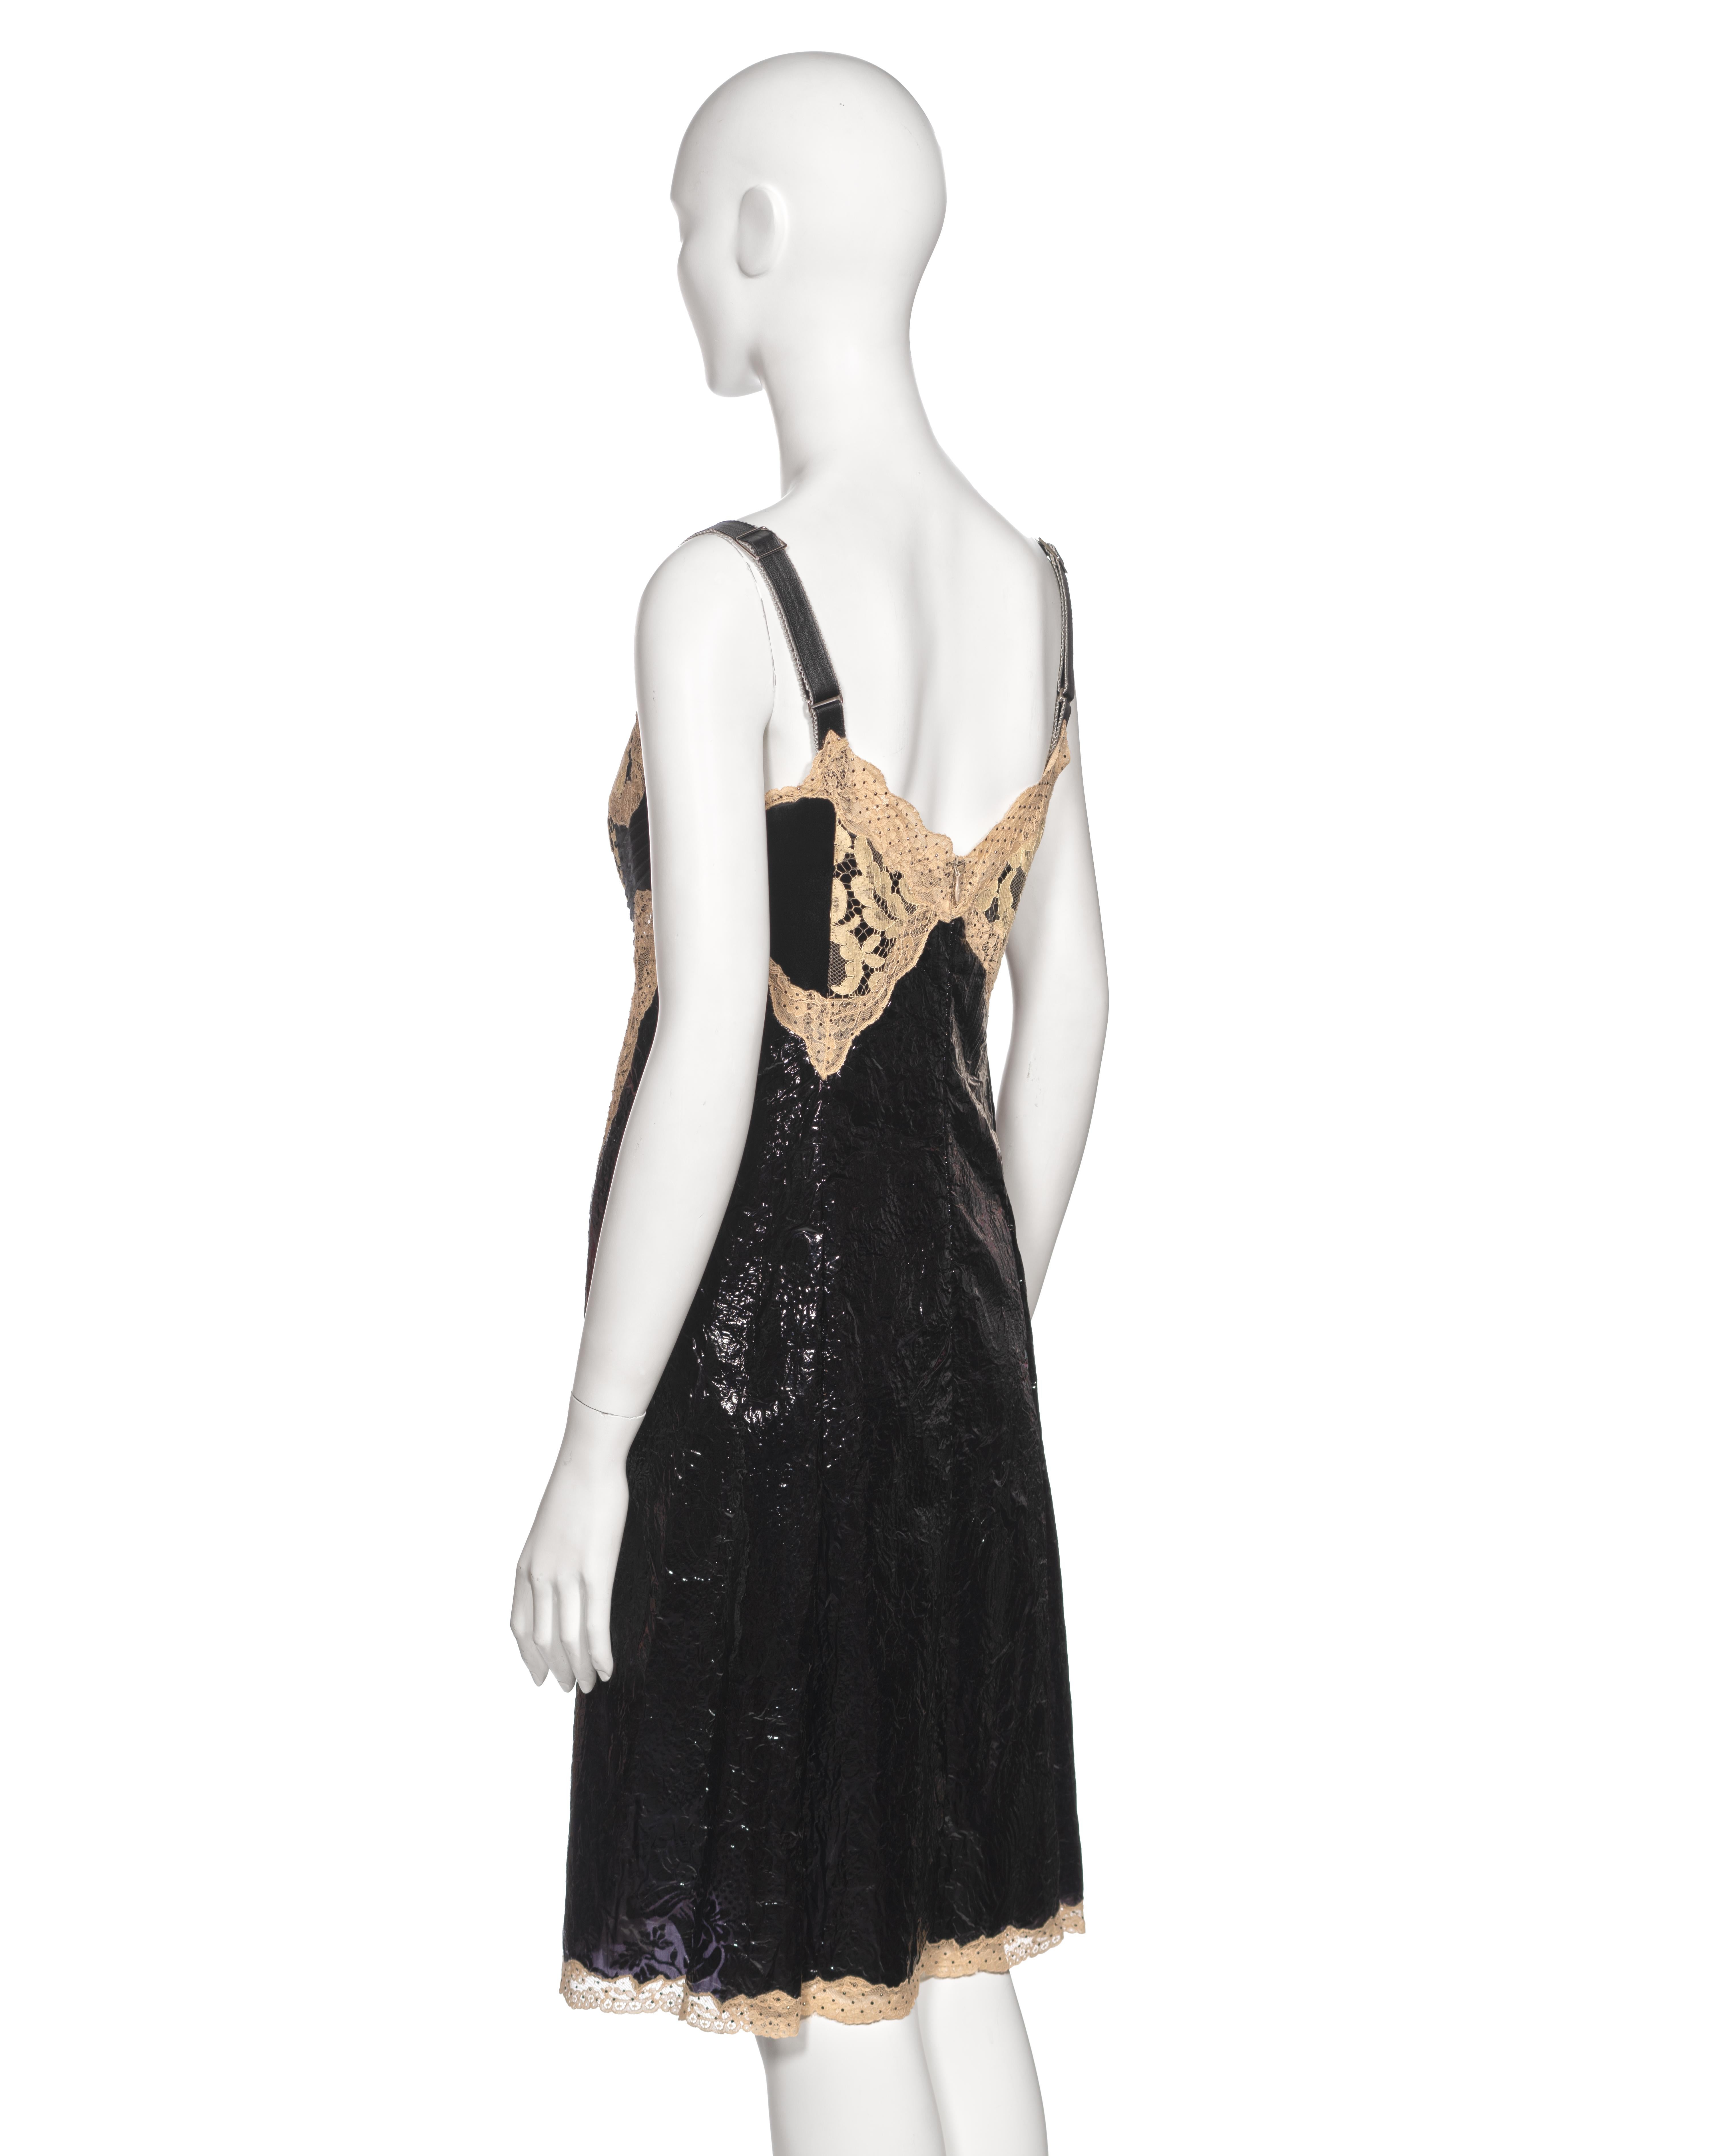 Louis Vuitton by Nicolas Ghesquière Evening Slip Dress Dress with Lace, fw 2017 For Sale 5